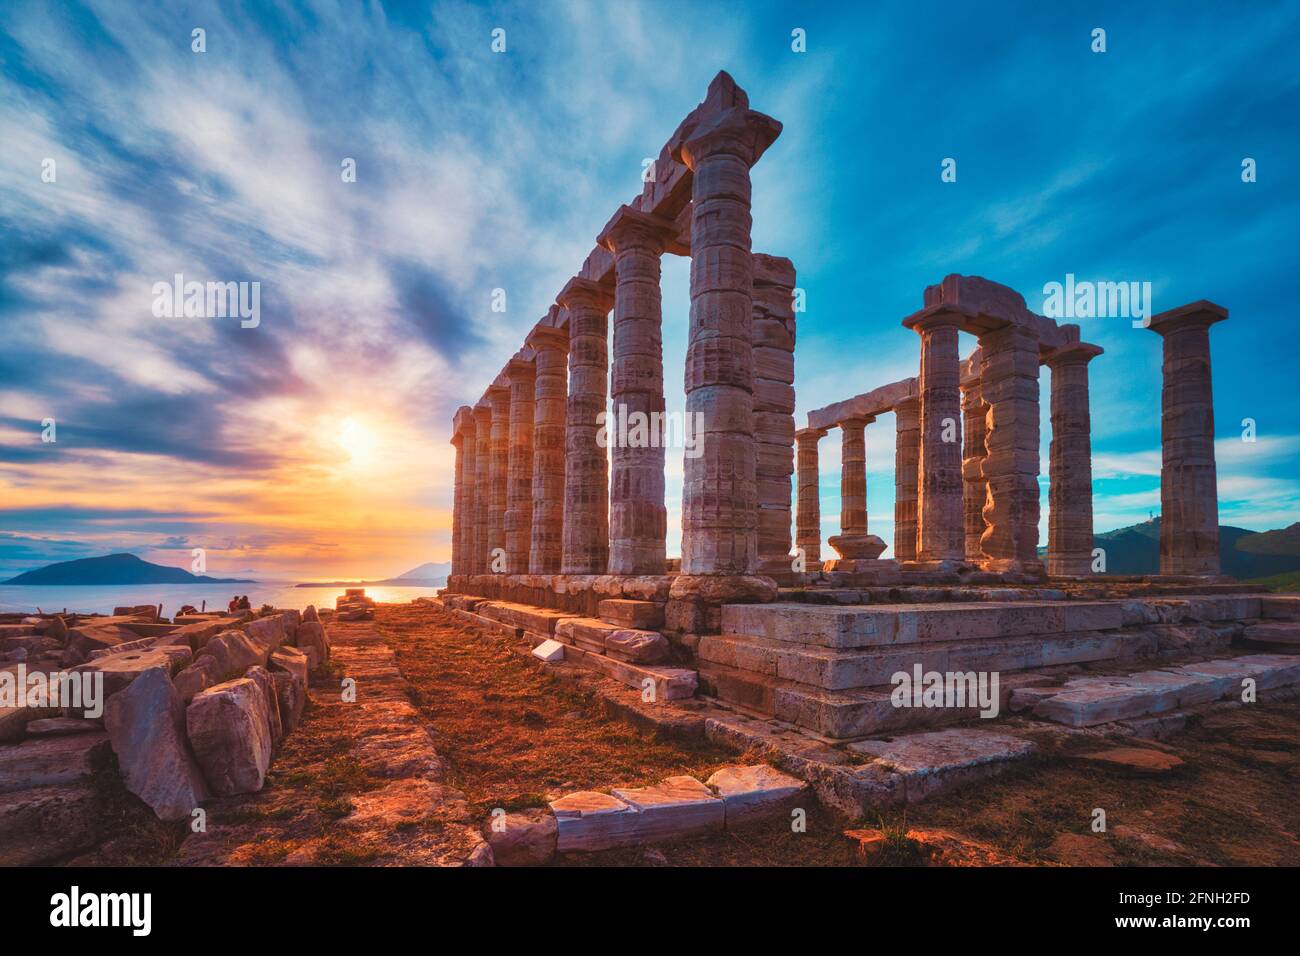 Poseidon temple ruins on Cape Sounio on sunset, Greece Stock Photo